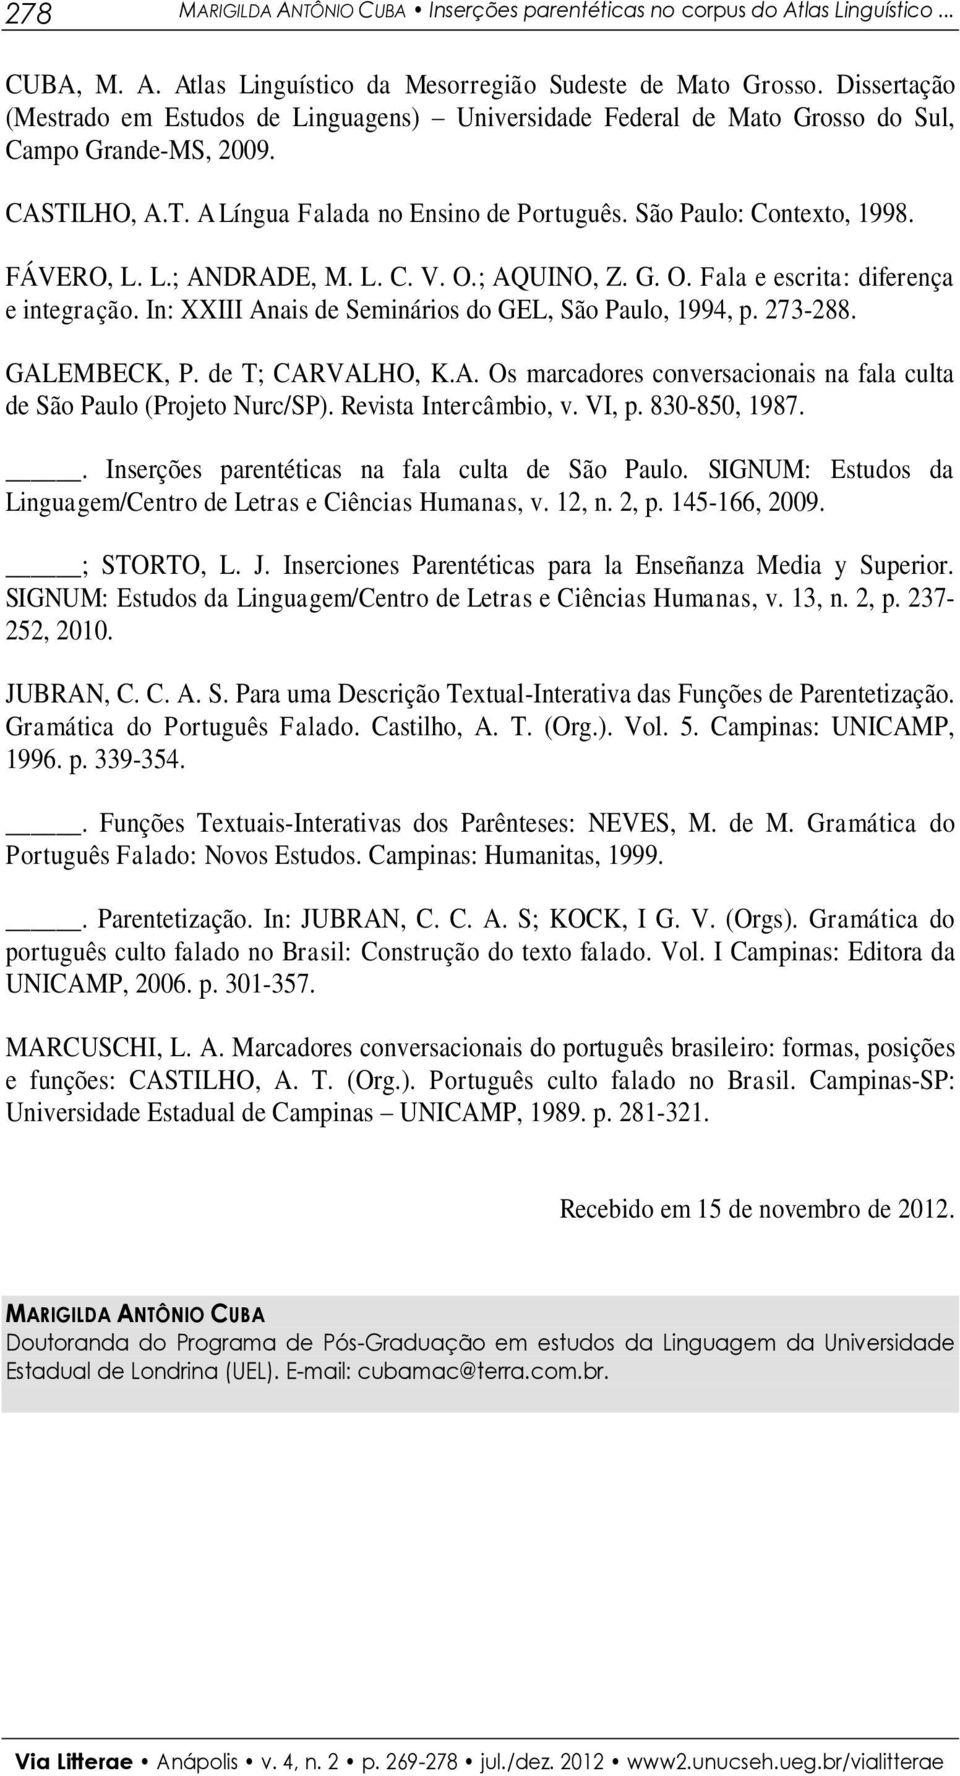 FÁVERO, L. L.; ANDRADE, M. L. C. V. O.; AQUINO, Z. G. O. Fala e escrita: diferença e integração. In: XXIII Anais de Seminários do GEL, São Paulo, 1994, p. 273-288. GALEMBECK, P. de T; CARVALHO, K.A. Os marcadores conversacionais na fala culta de São Paulo (Projeto Nurc/SP).